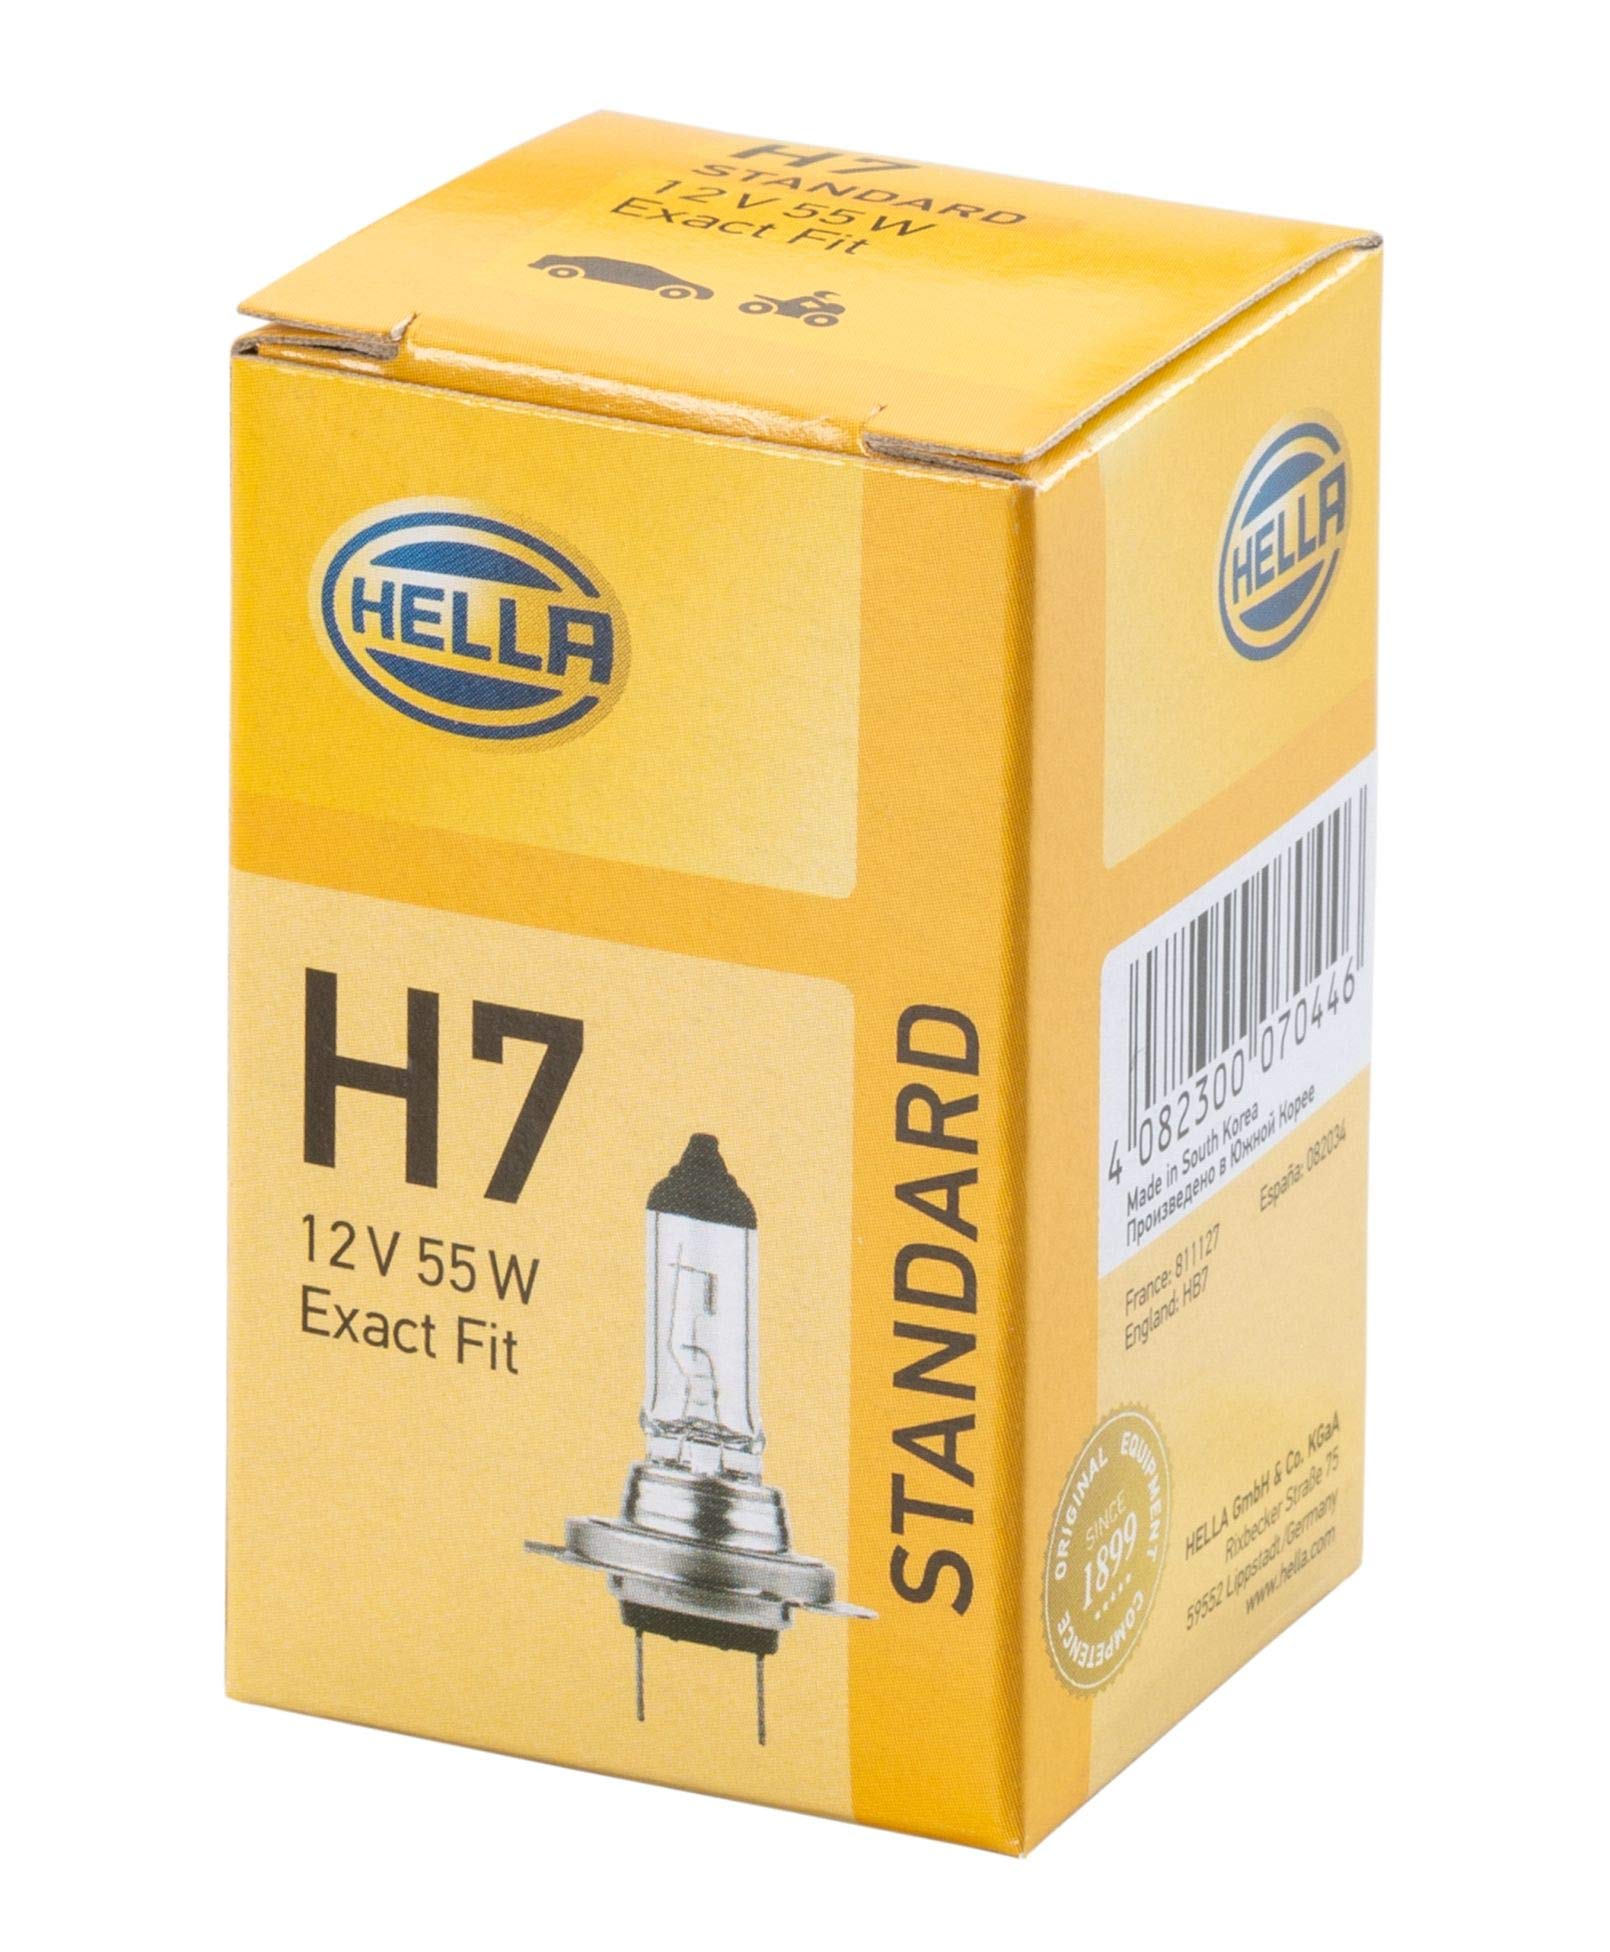 HELLA - Glühlampe - H7 - Standard - 12V - 55W - Sockelausführung: PX26d - Schachtel - Menge: 1 - 8GH 007 157-121 von Hella